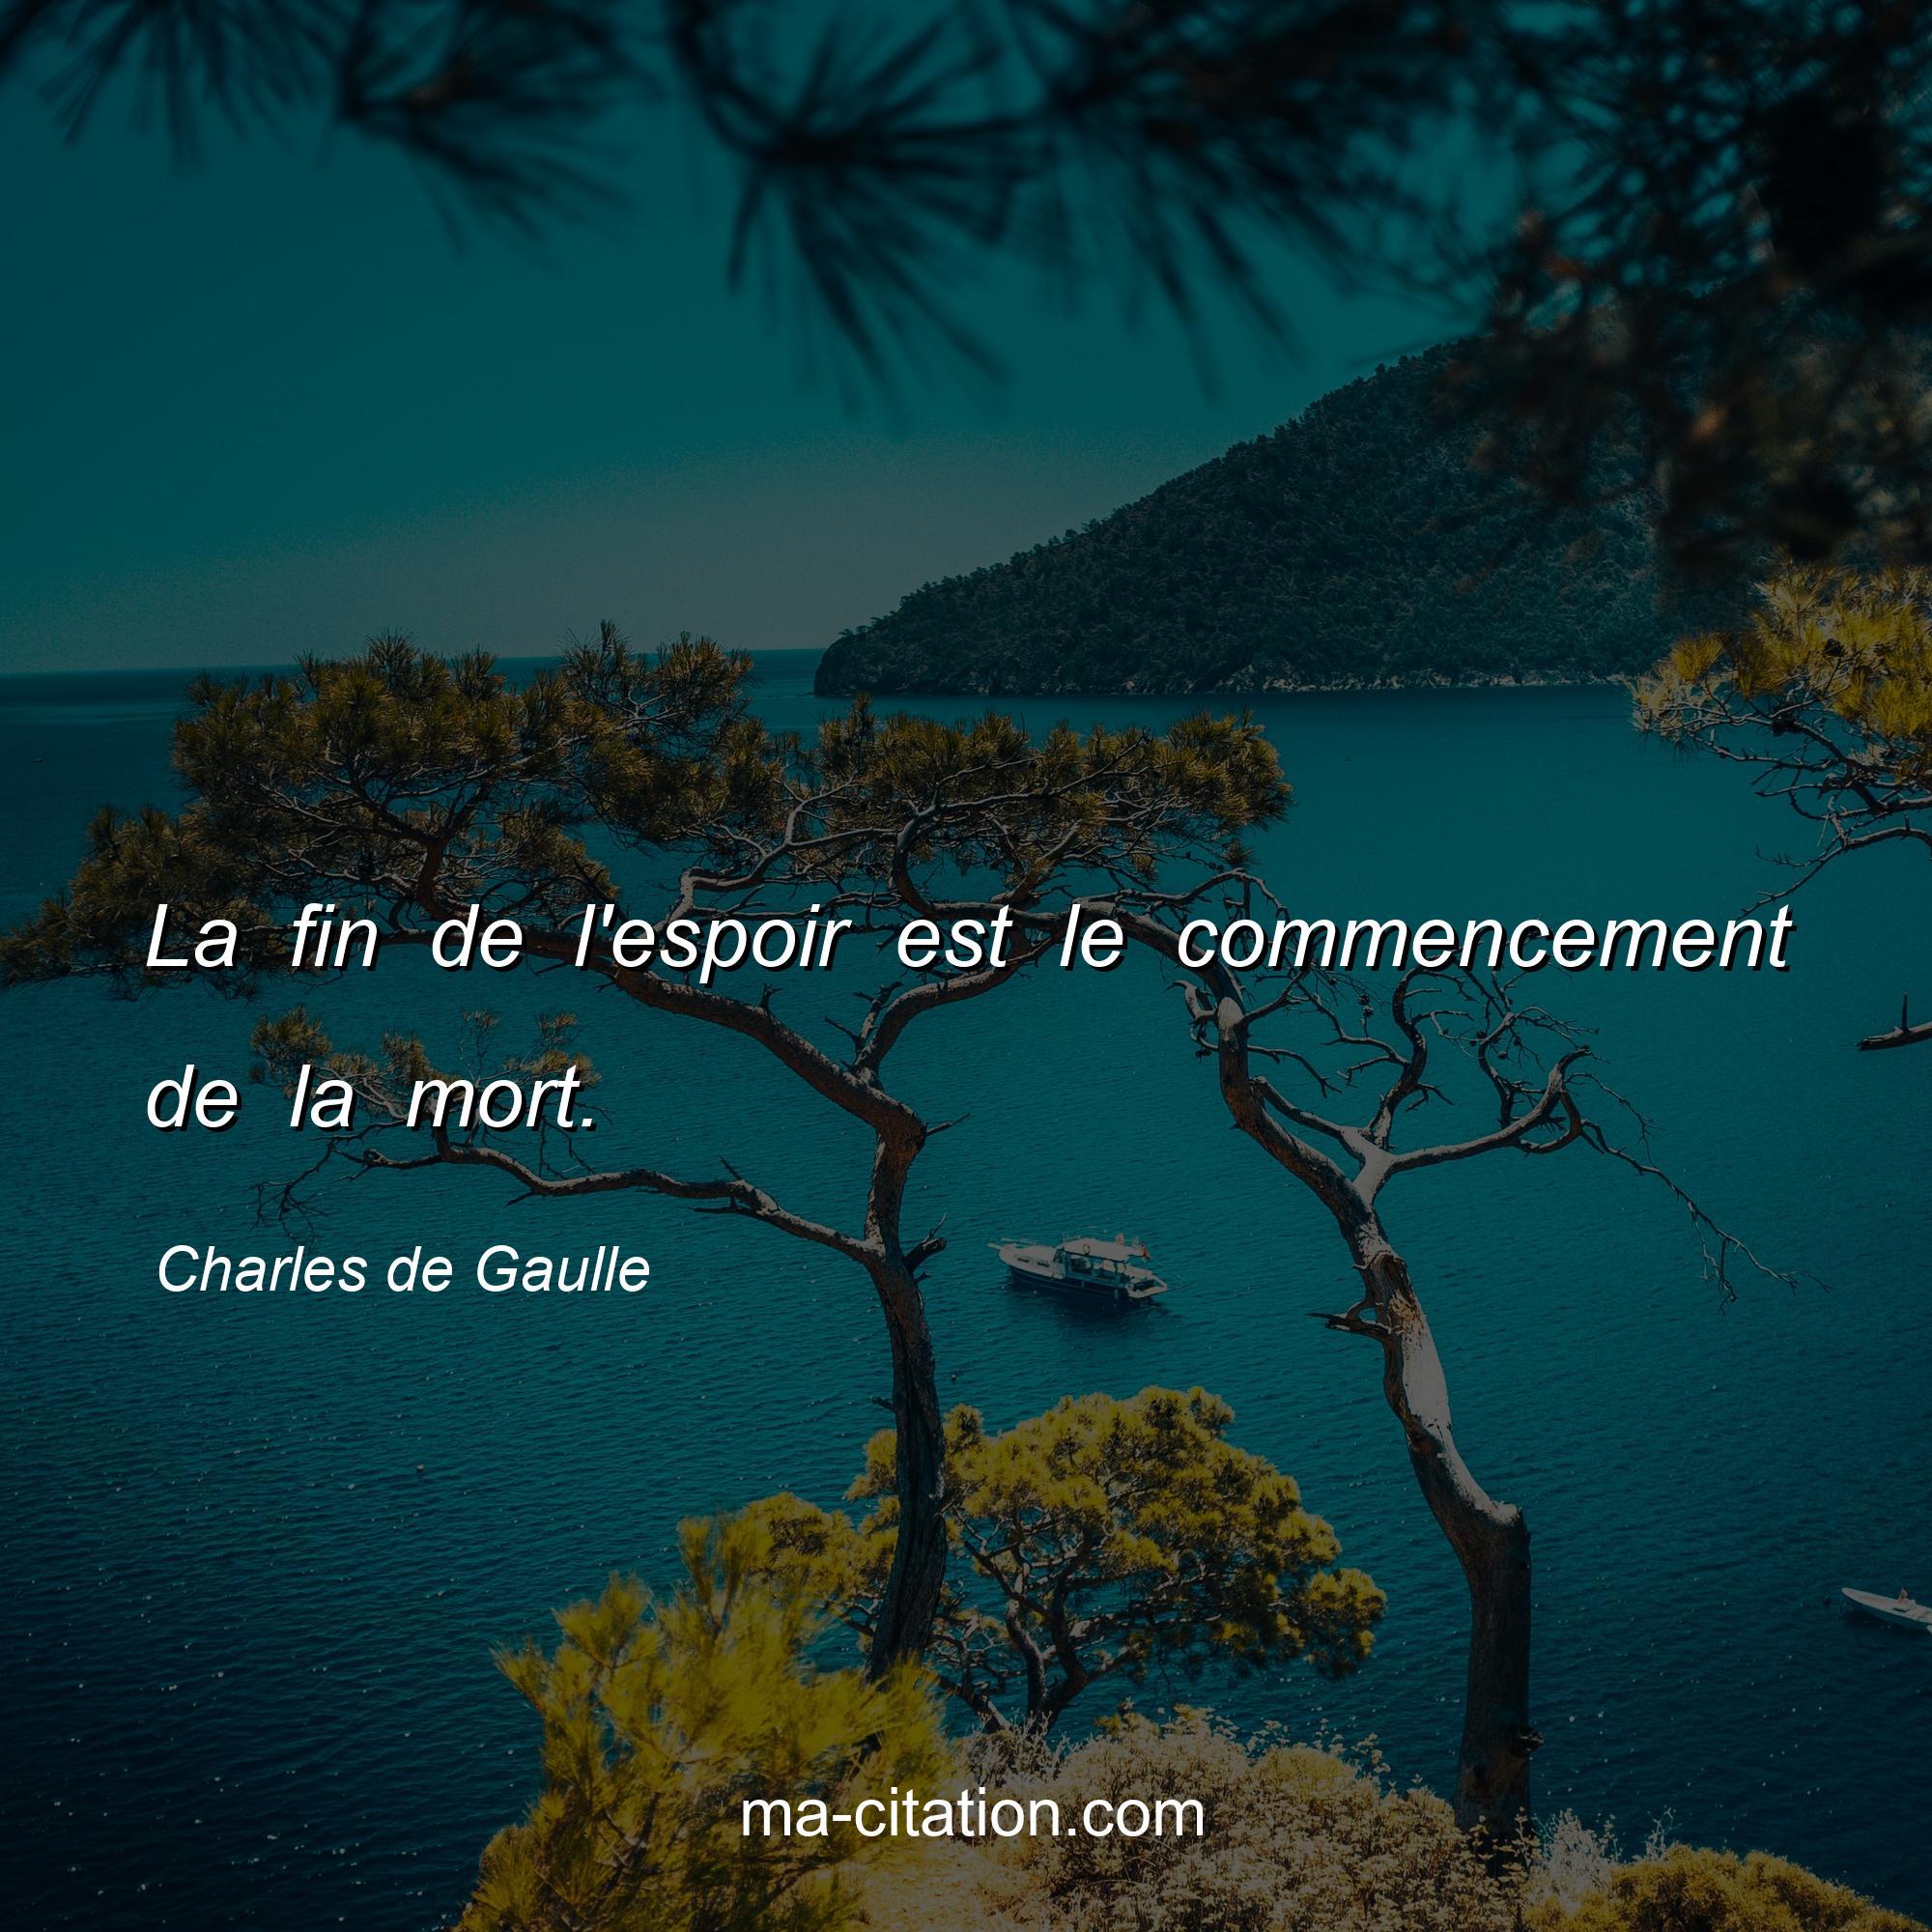 Charles de Gaulle : La fin de l'espoir est le commencement de la mort.